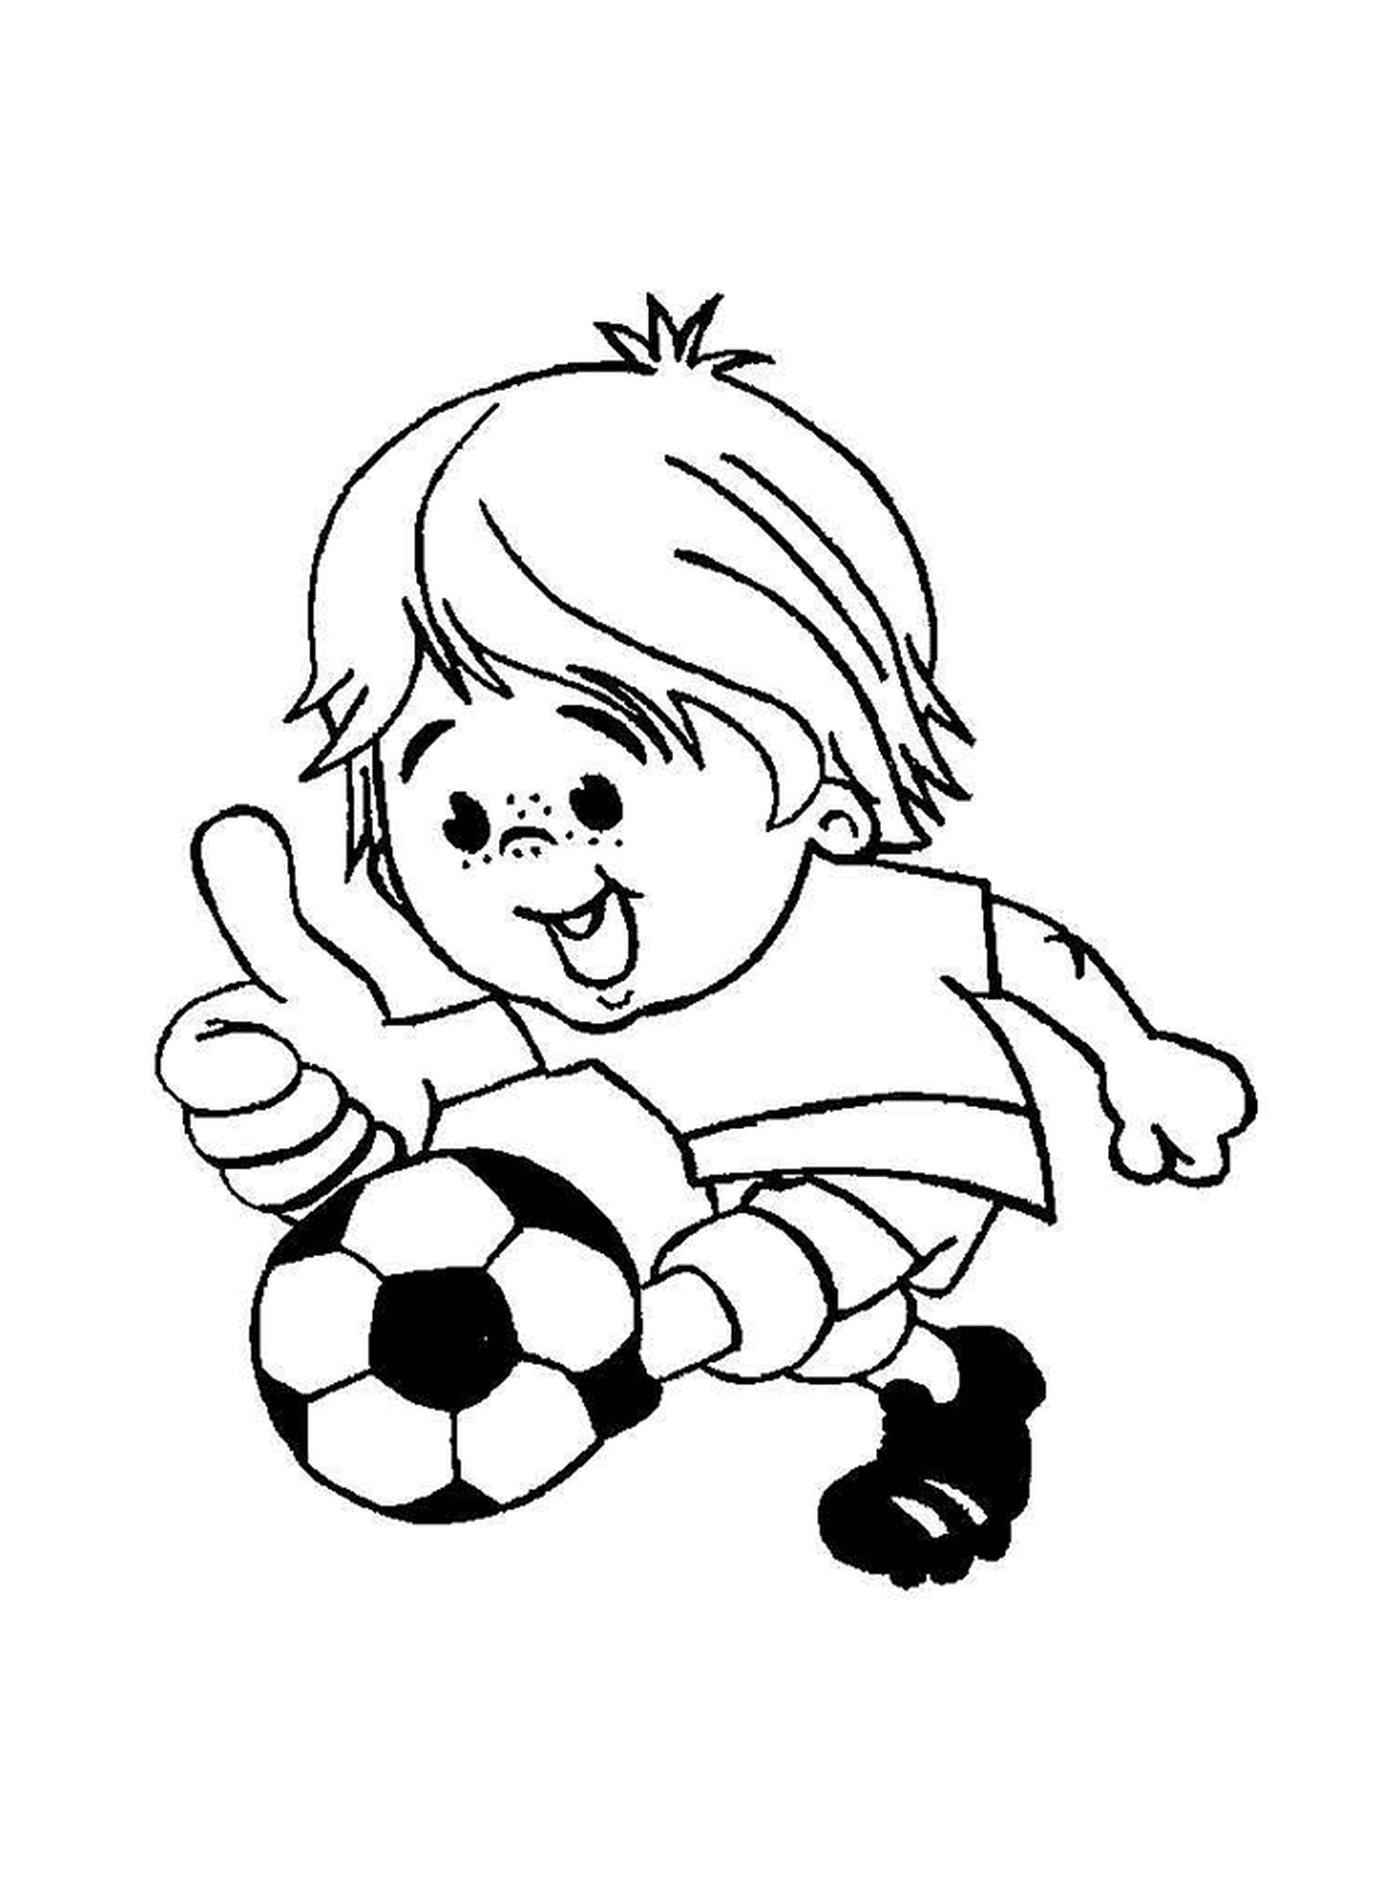  Ребёнок играет в футбол 